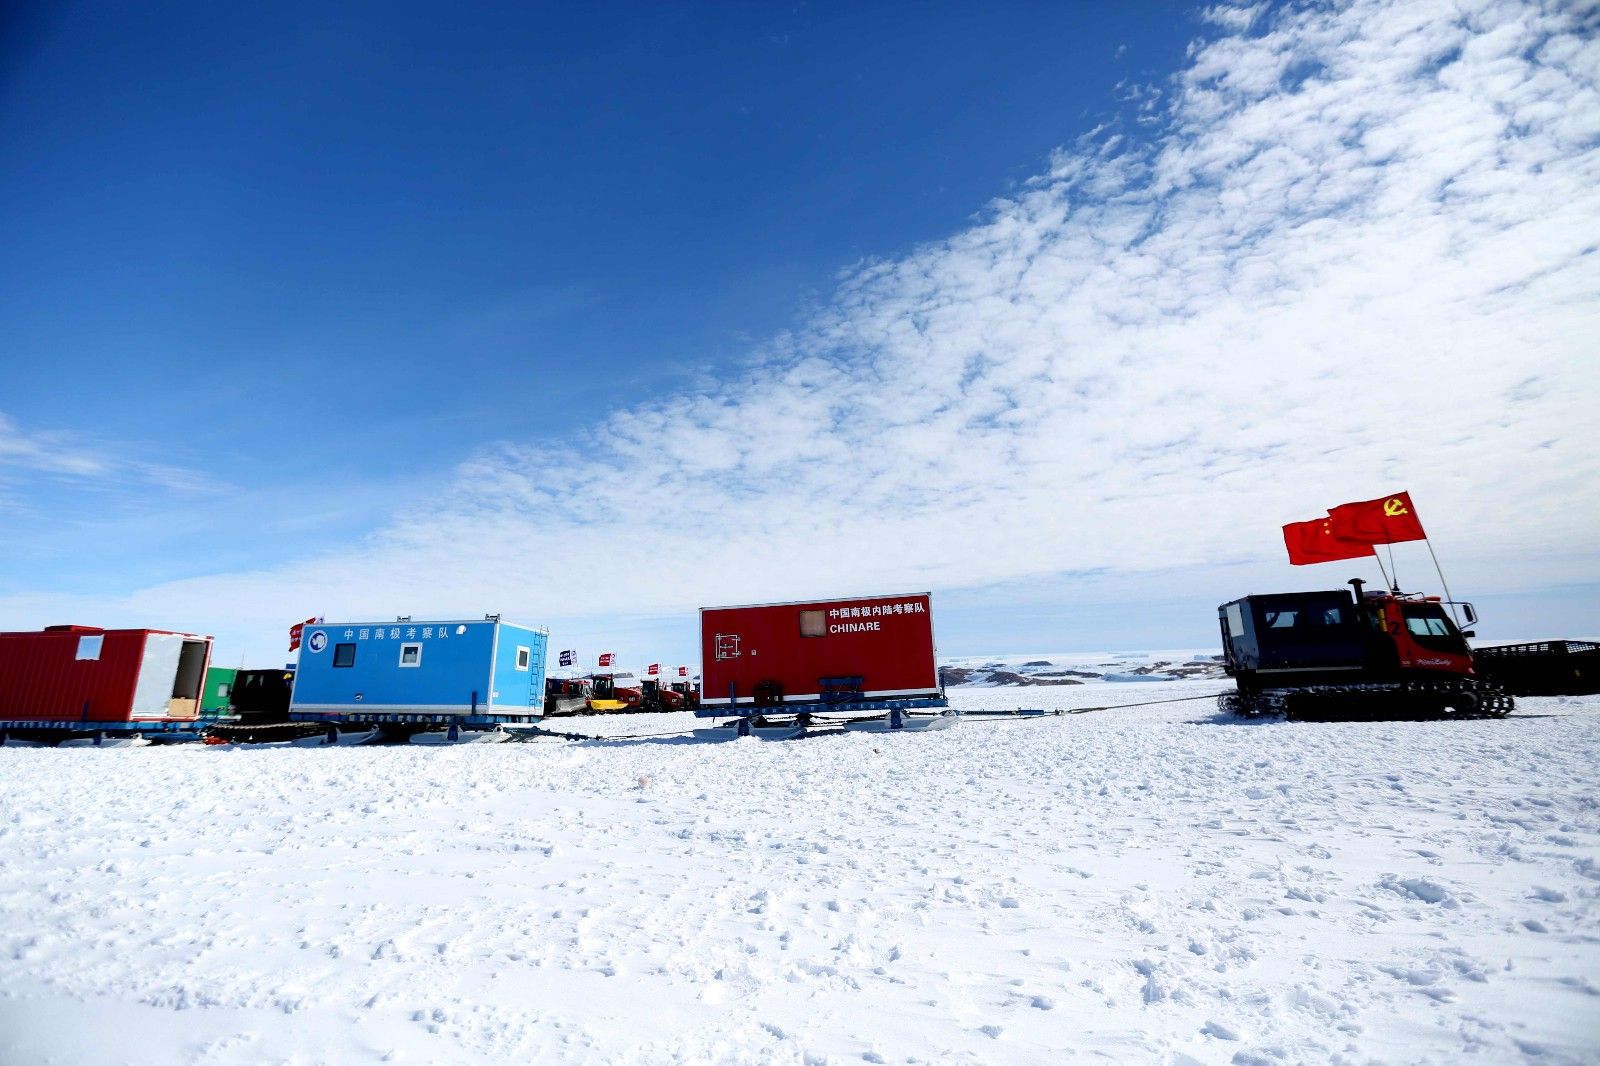 37勇士分乘11辆雪地车,向位于南极腹地茫茫冰原的中国泰山站和昆仑